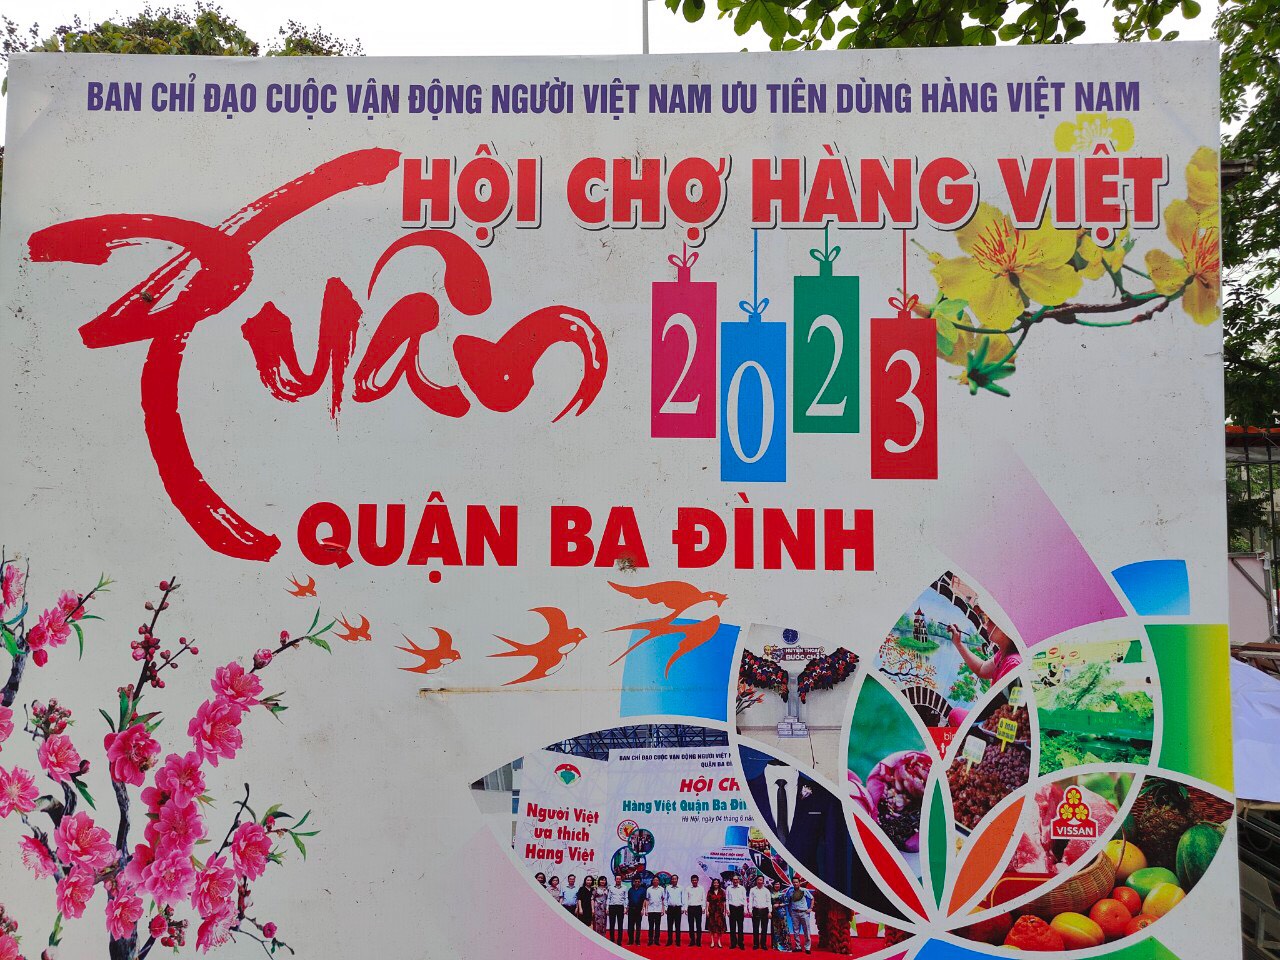 Cùng TPCare Tham Gia Hội Chợ Hàng Việt - Quận Ba Đình 2023